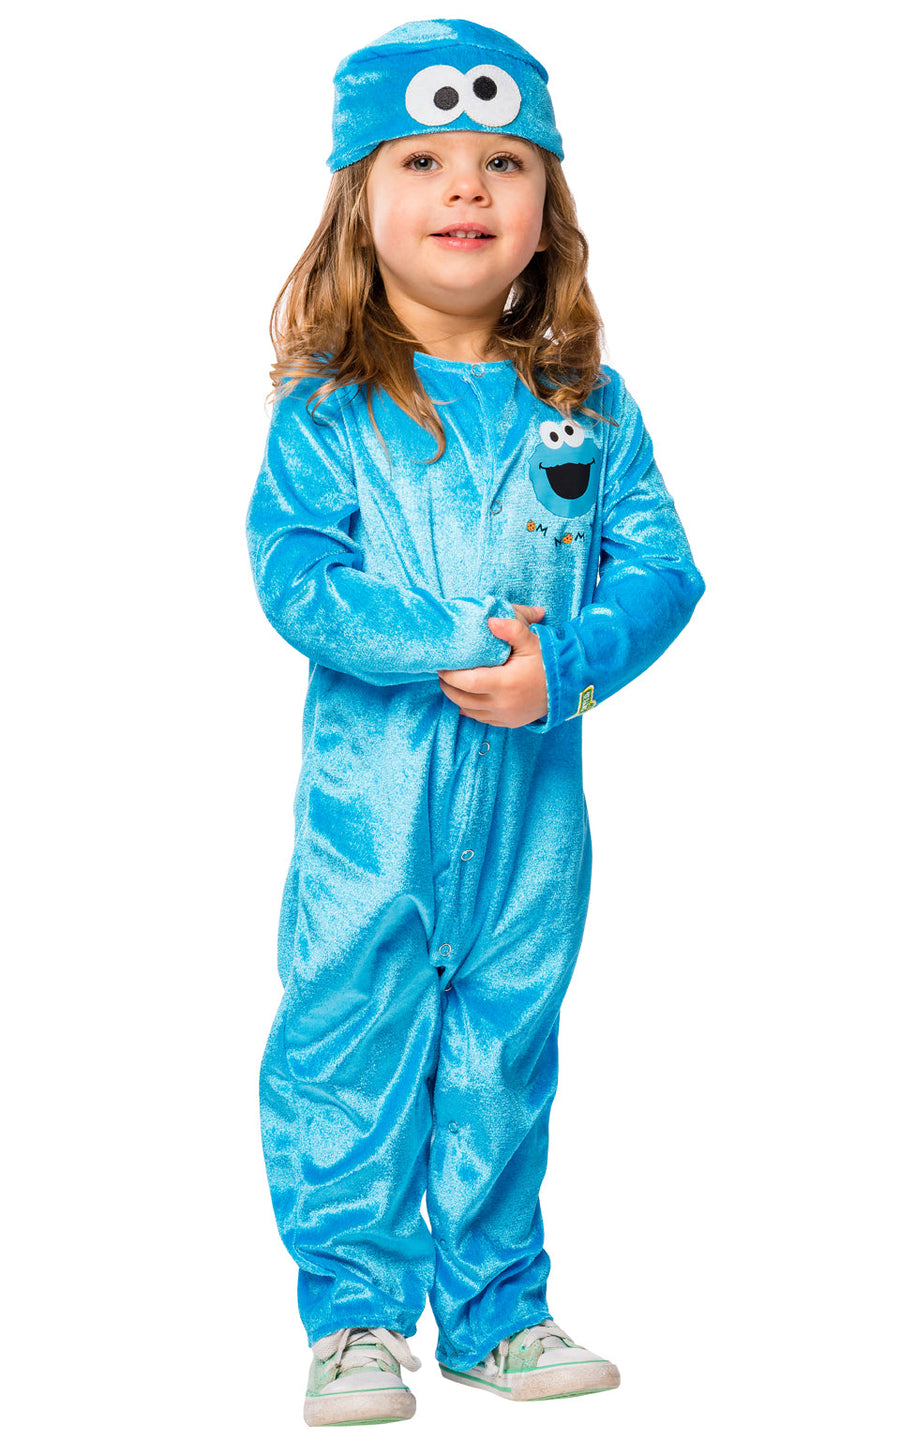 Cookie Monster Costume for Infants Sesame Street_1